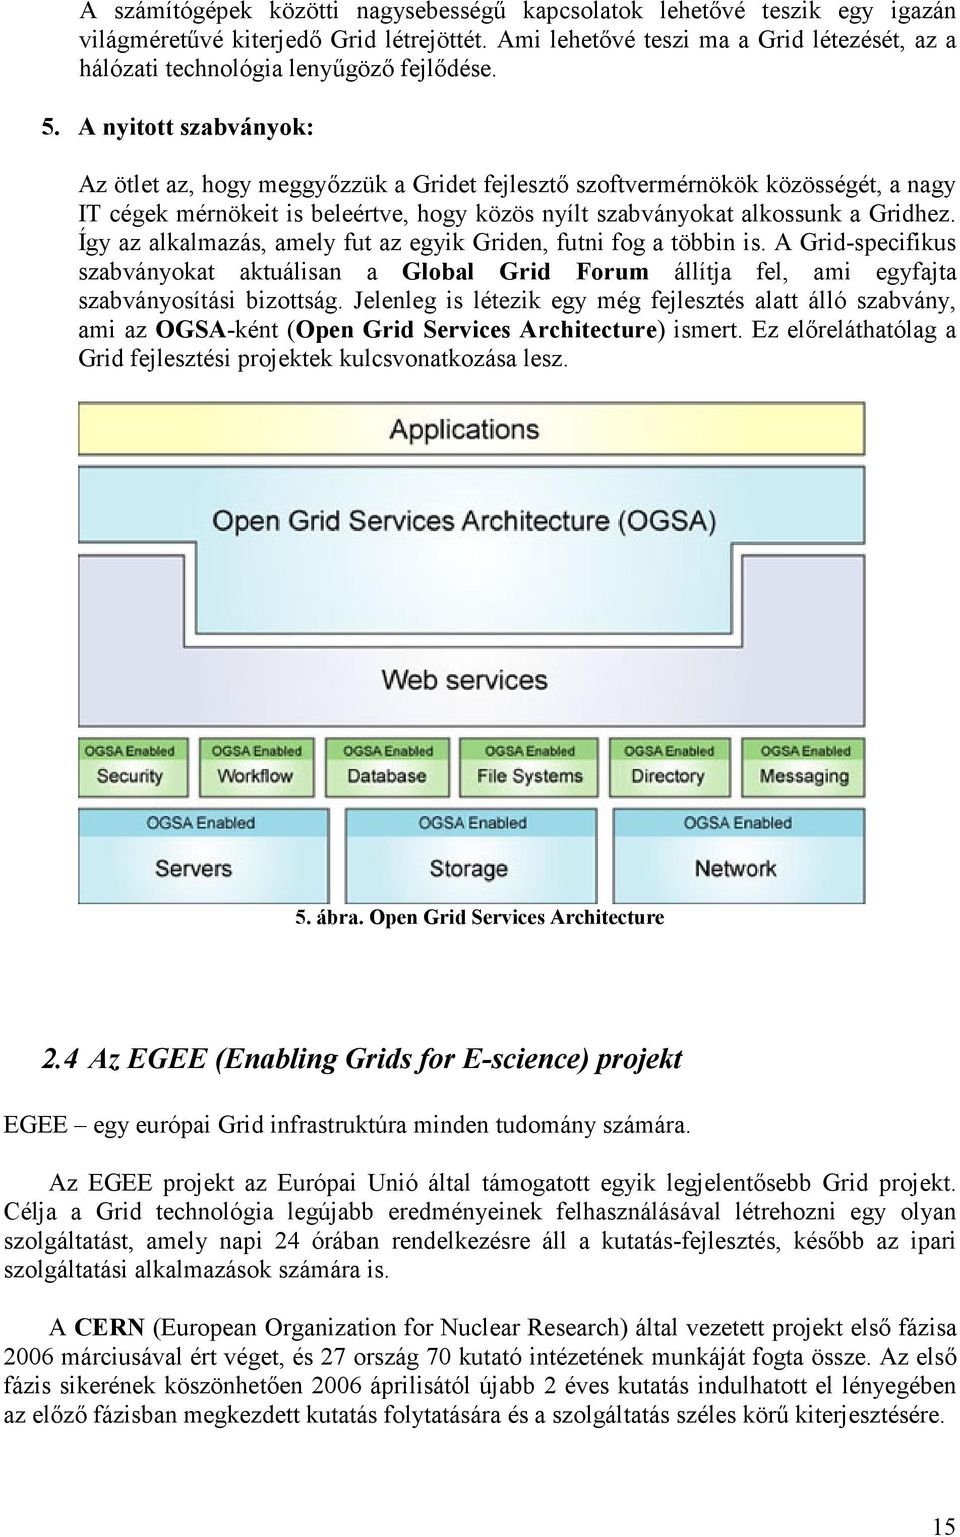 A nyitott szabványok: Az ötlet az, hogy meggyızzük a Gridet fejlesztı szoftvermérnökök közösségét, a nagy IT cégek mérnökeit is beleértve, hogy közös nyílt szabványokat alkossunk a Gridhez.